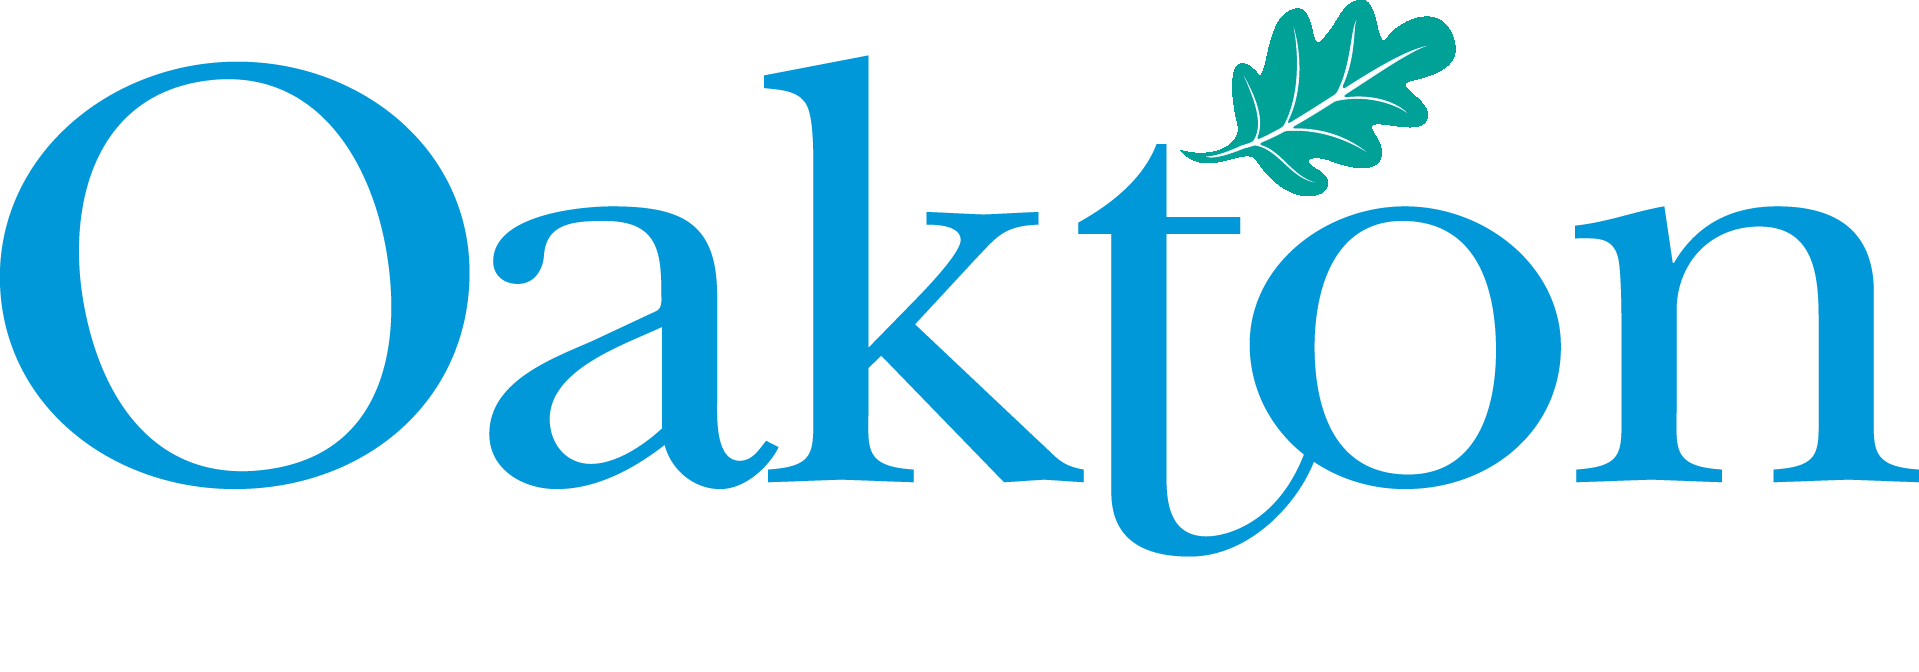 Oakton Estates logo